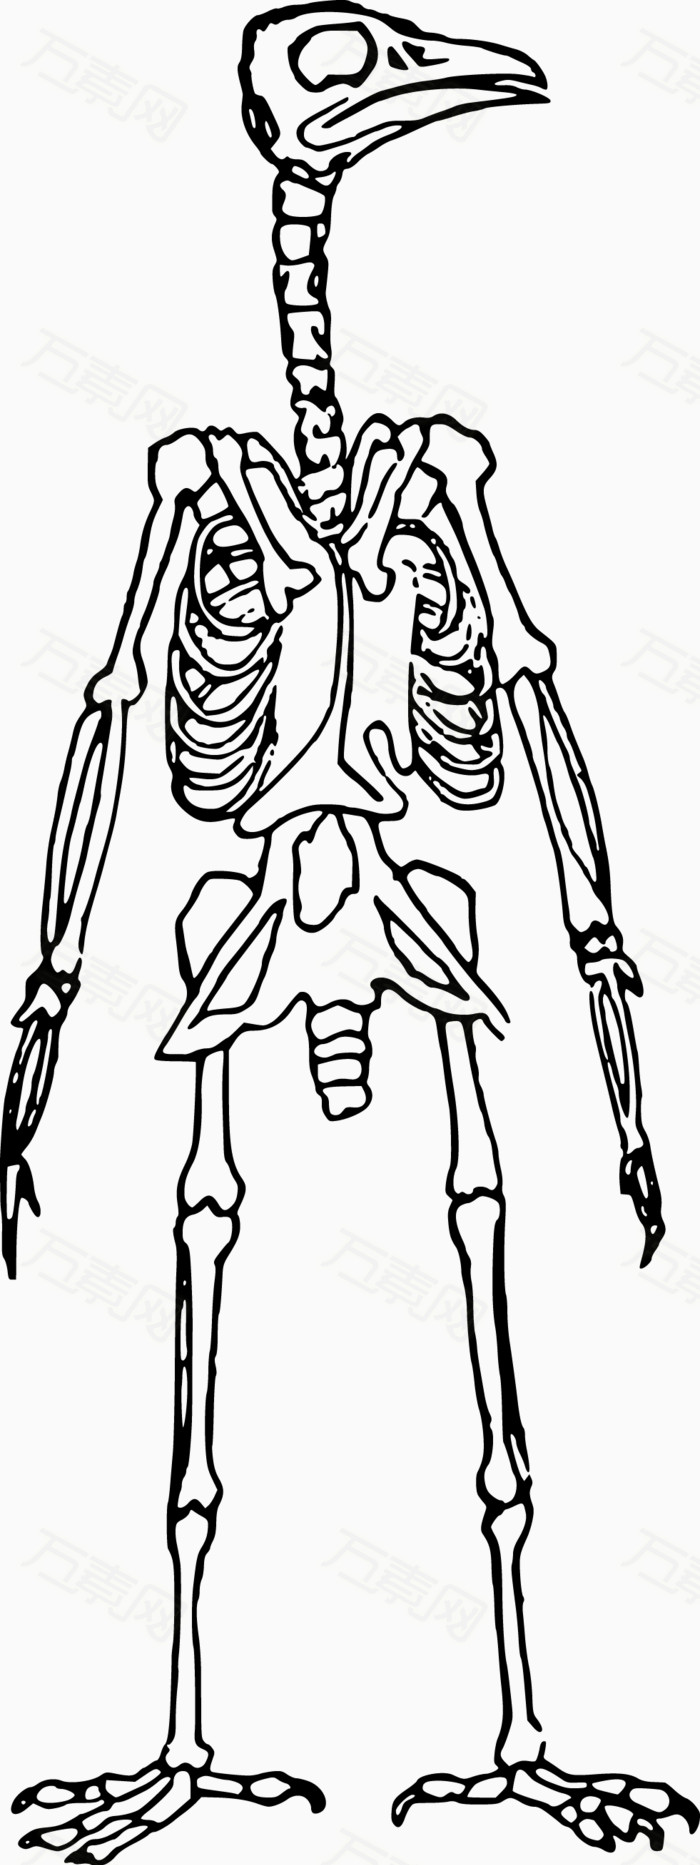 骨骼线平面设计图片